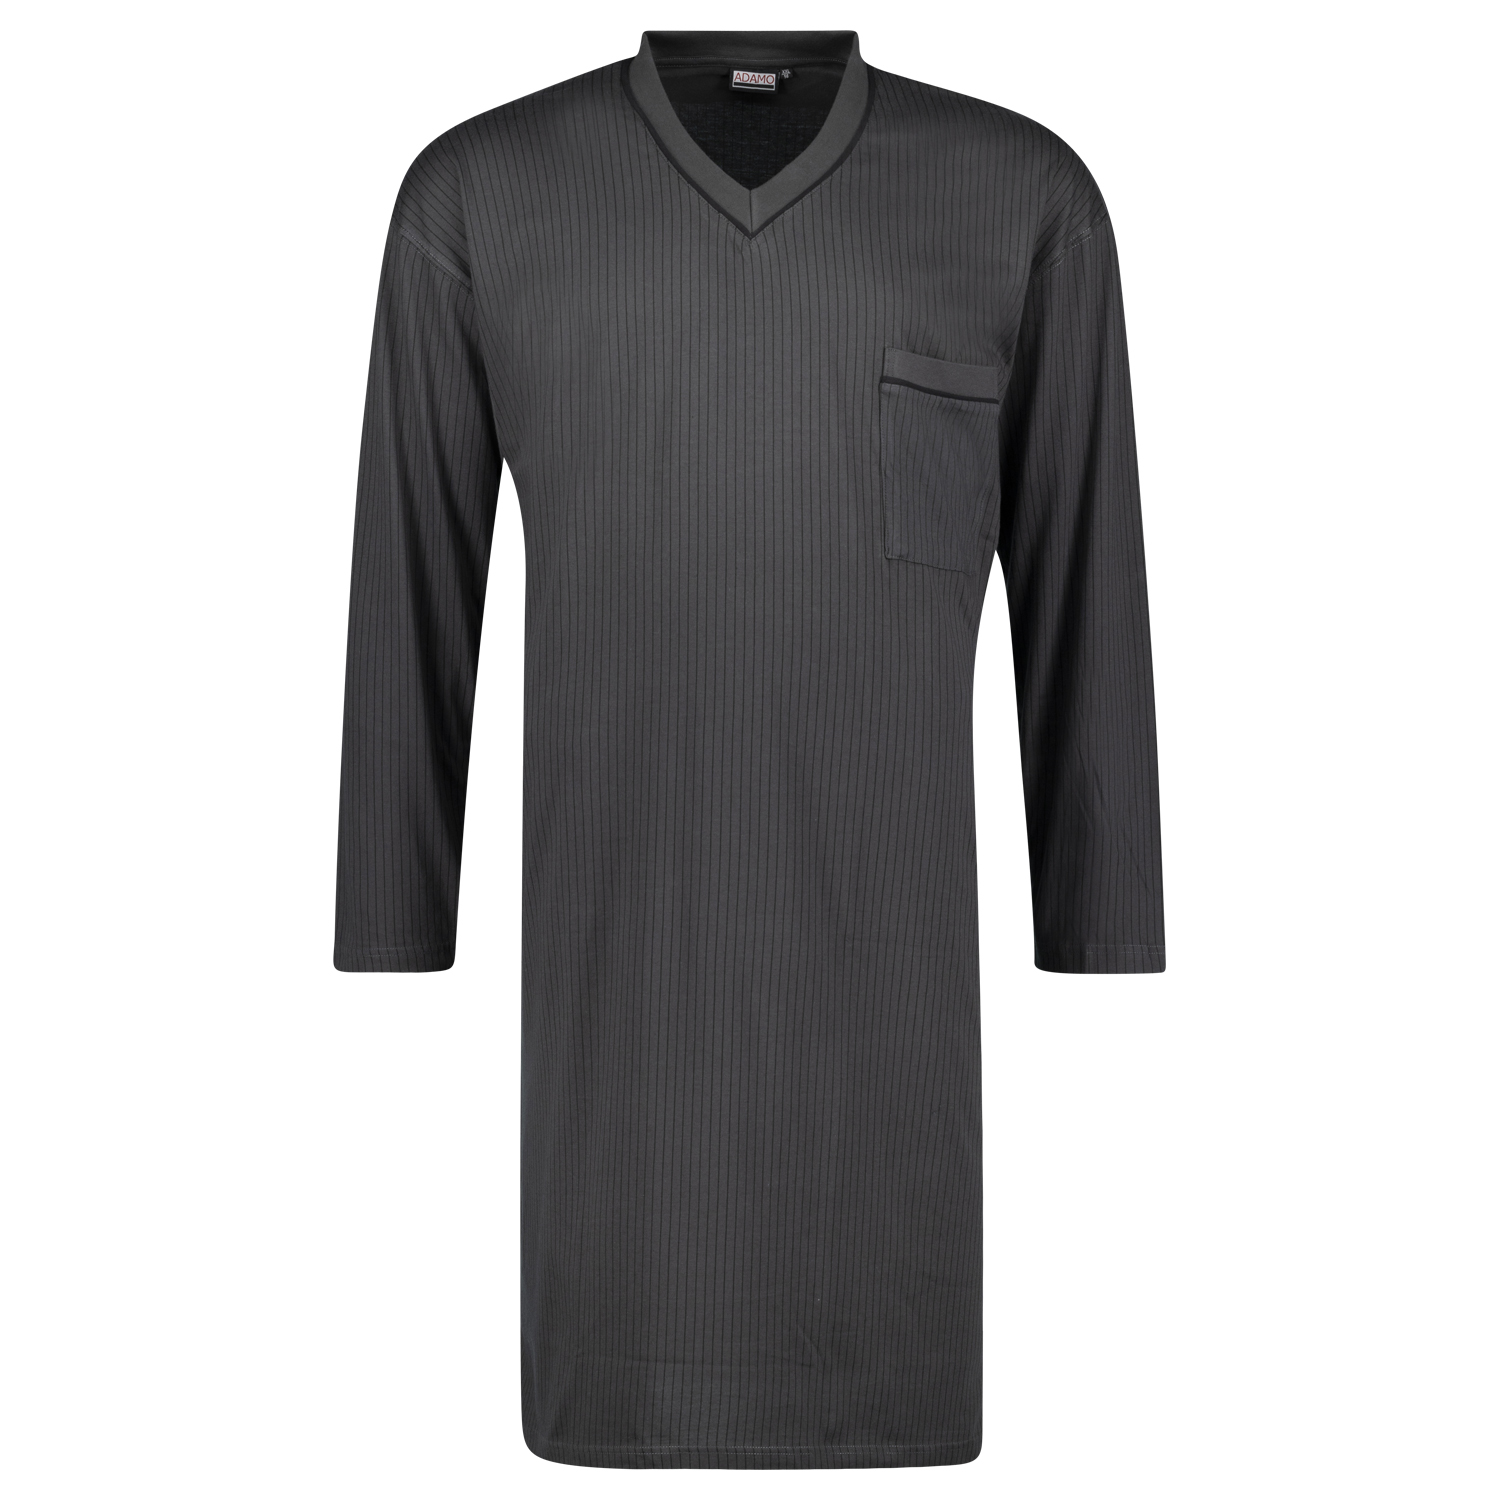 Langarm-Nachthemd von Adamo in anthrazit mit schwarzen Streifen bis Übergröße 10XL